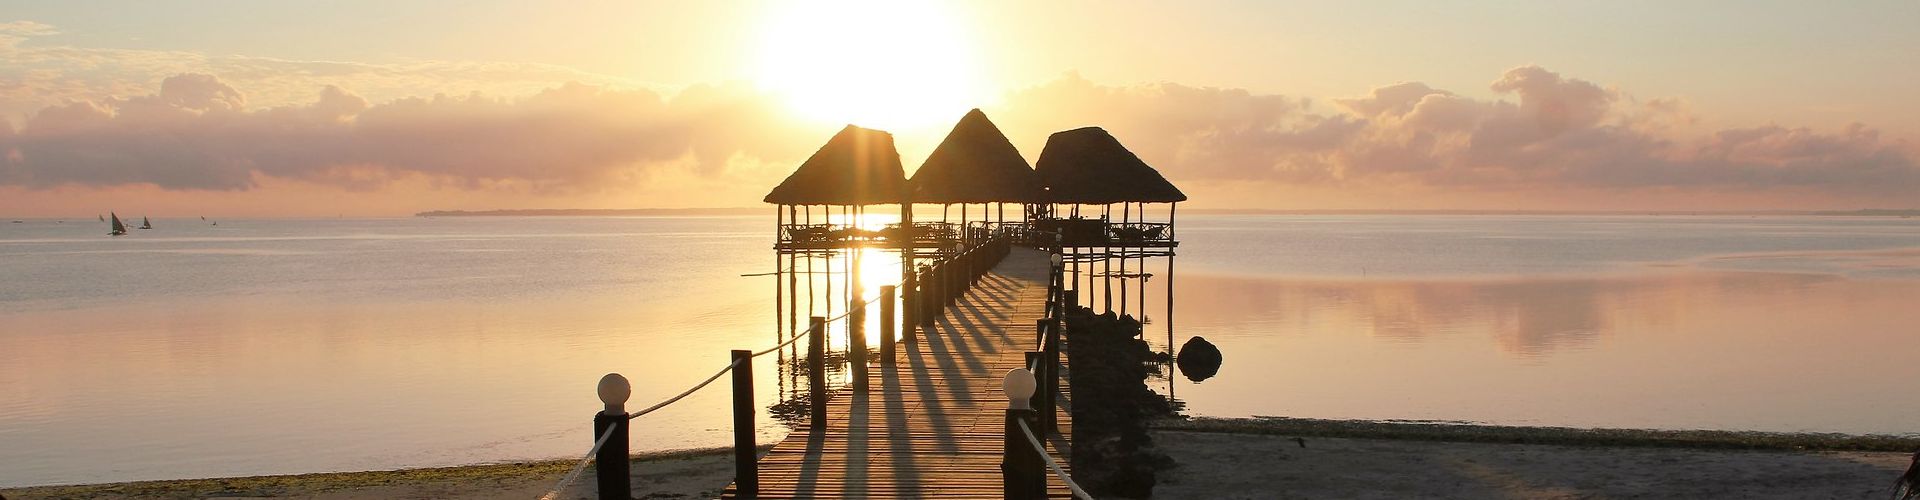 Rilassarsi in spiaggia e godersi il tramonto è solo una delle cose da fare a Zanzibar.